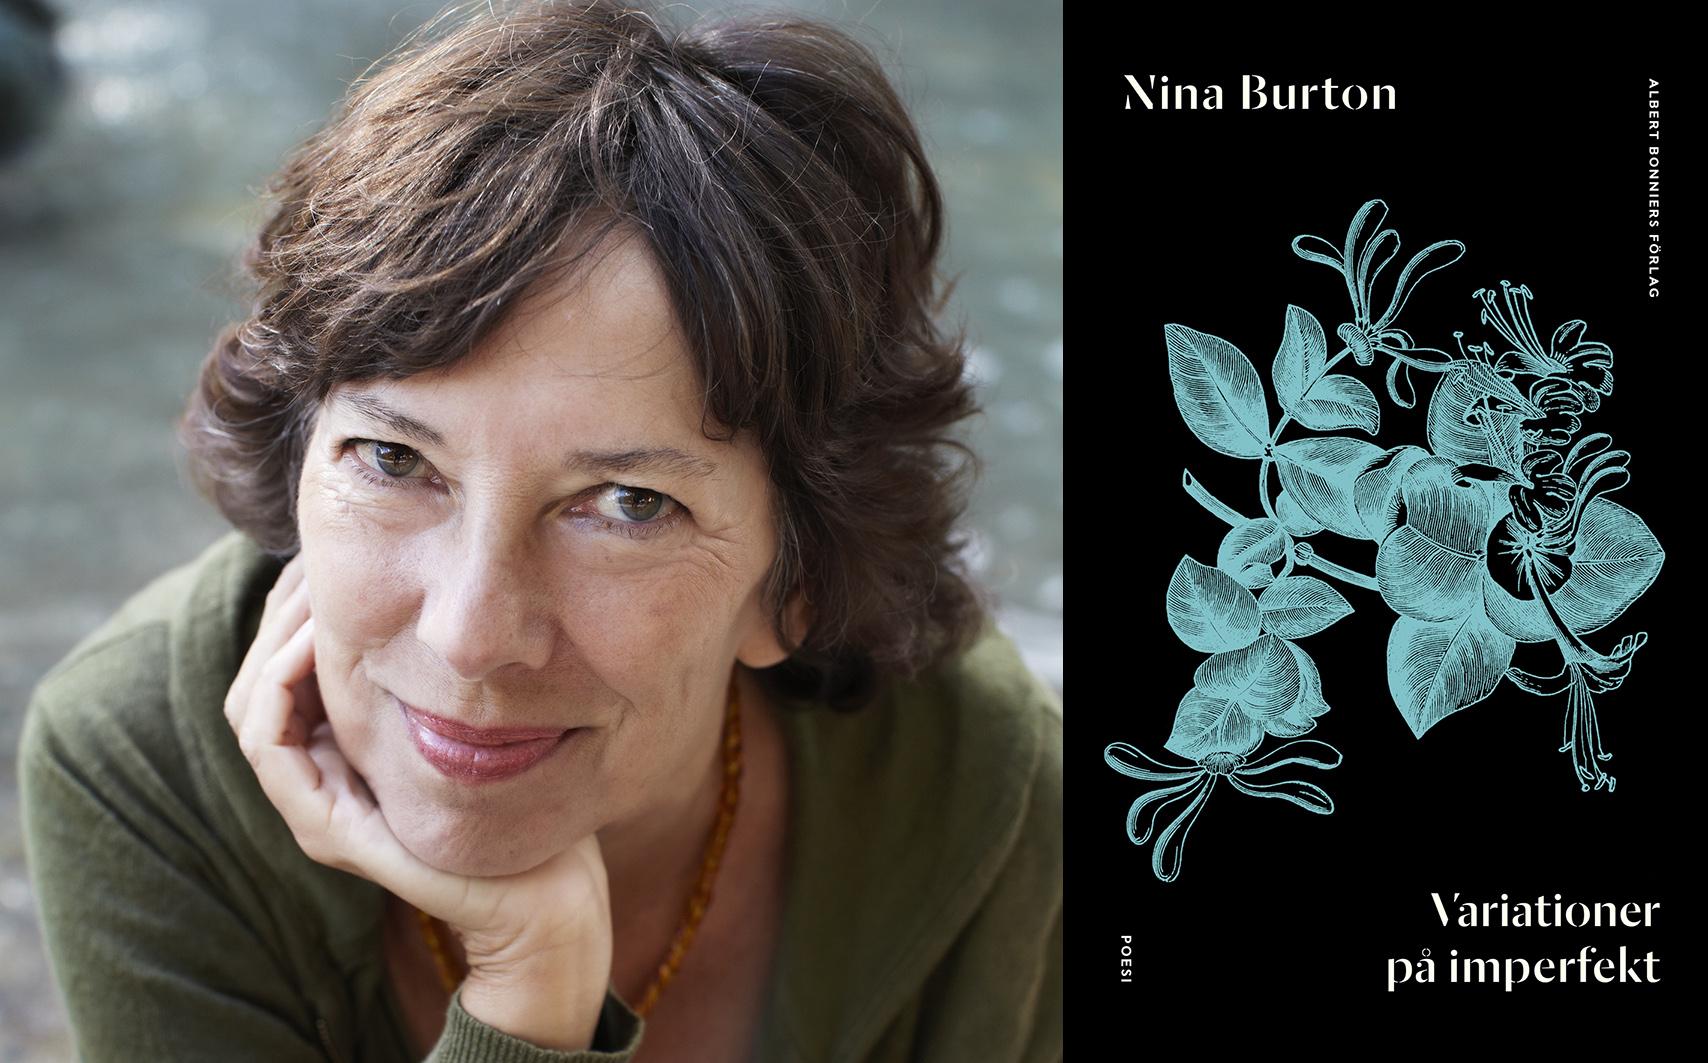 Nina Burton (född 1946), är poet och essäist och ledamot av det litterära Samfundet De Nio samt Vetenskapsakademien. Hennes essäer har fått stor uppmärksamhet, bland annat ”Gutenberggalaxen” som fick August-priset 2016. Med ”Variationer på imperfekt” återvänder Nina Burton till poesin. 